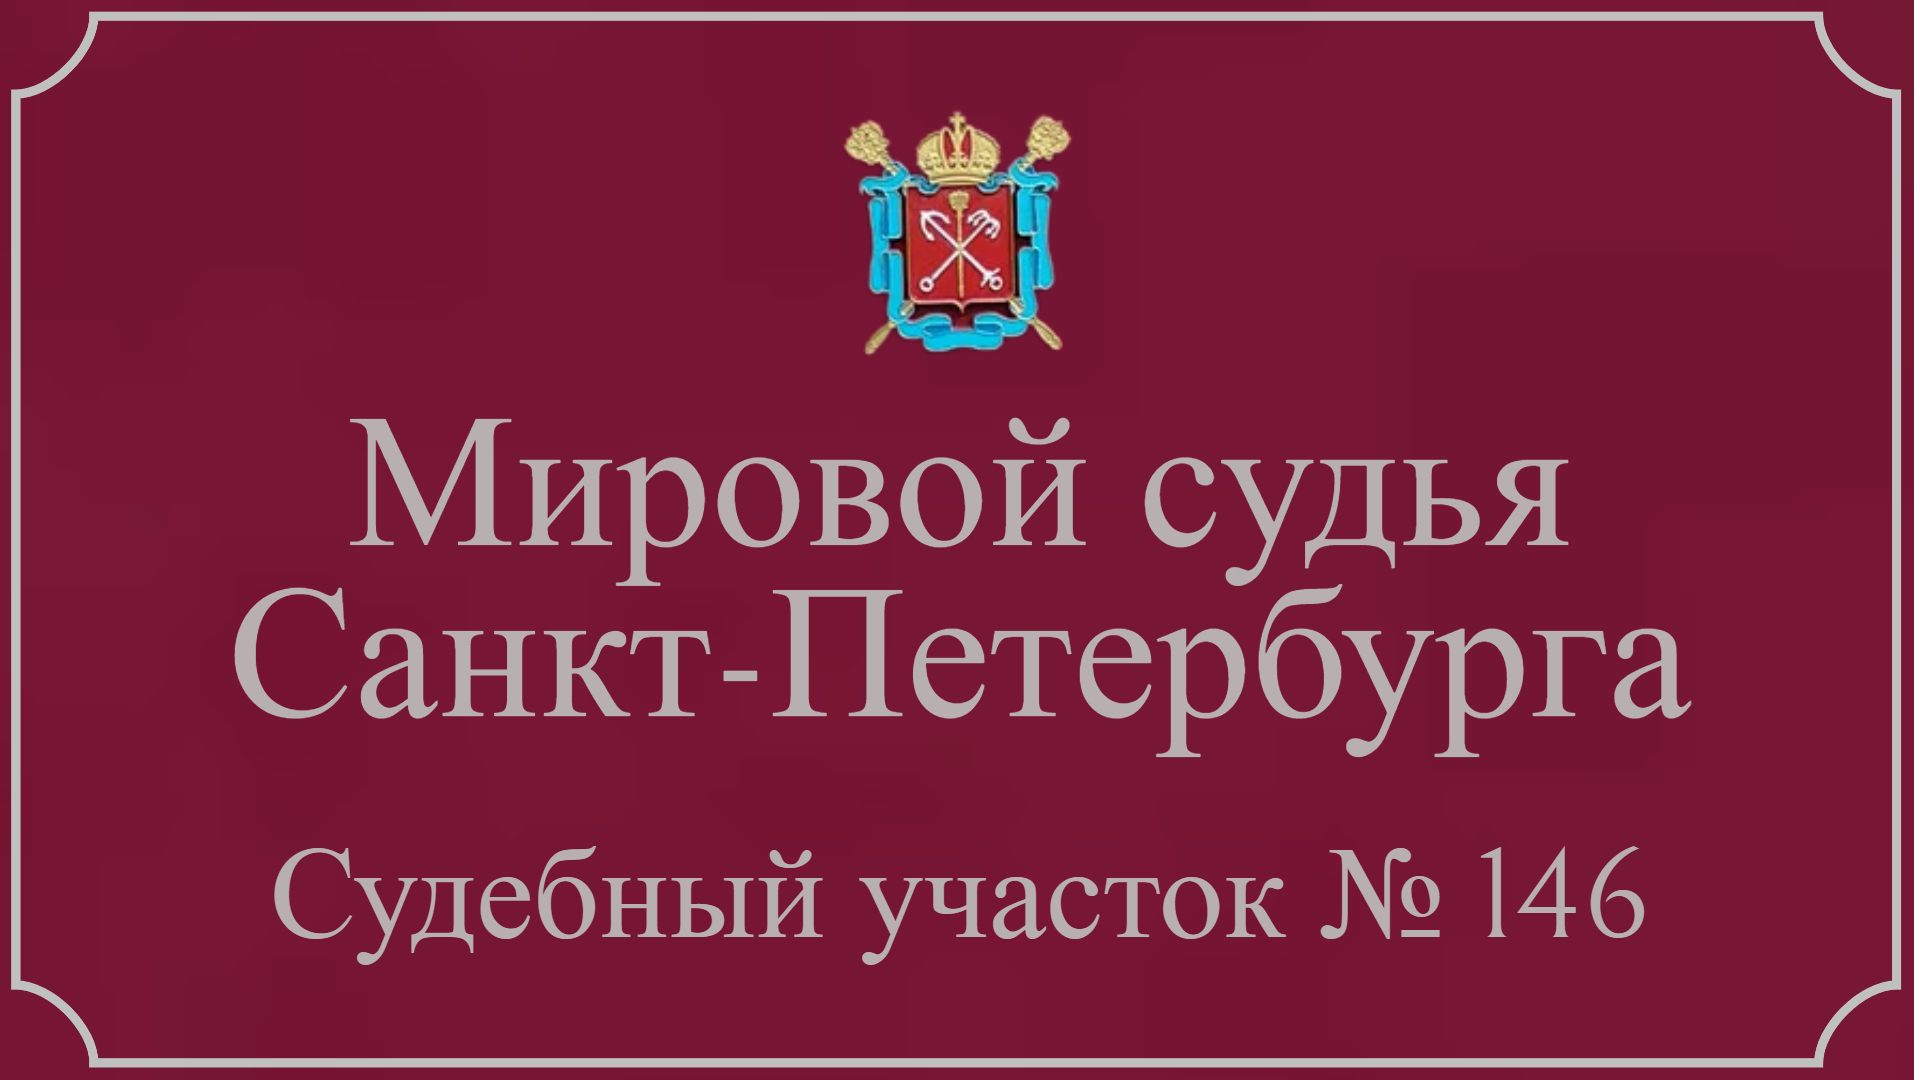 Информация по 146 судебному участку в Санкт-Петербурге.